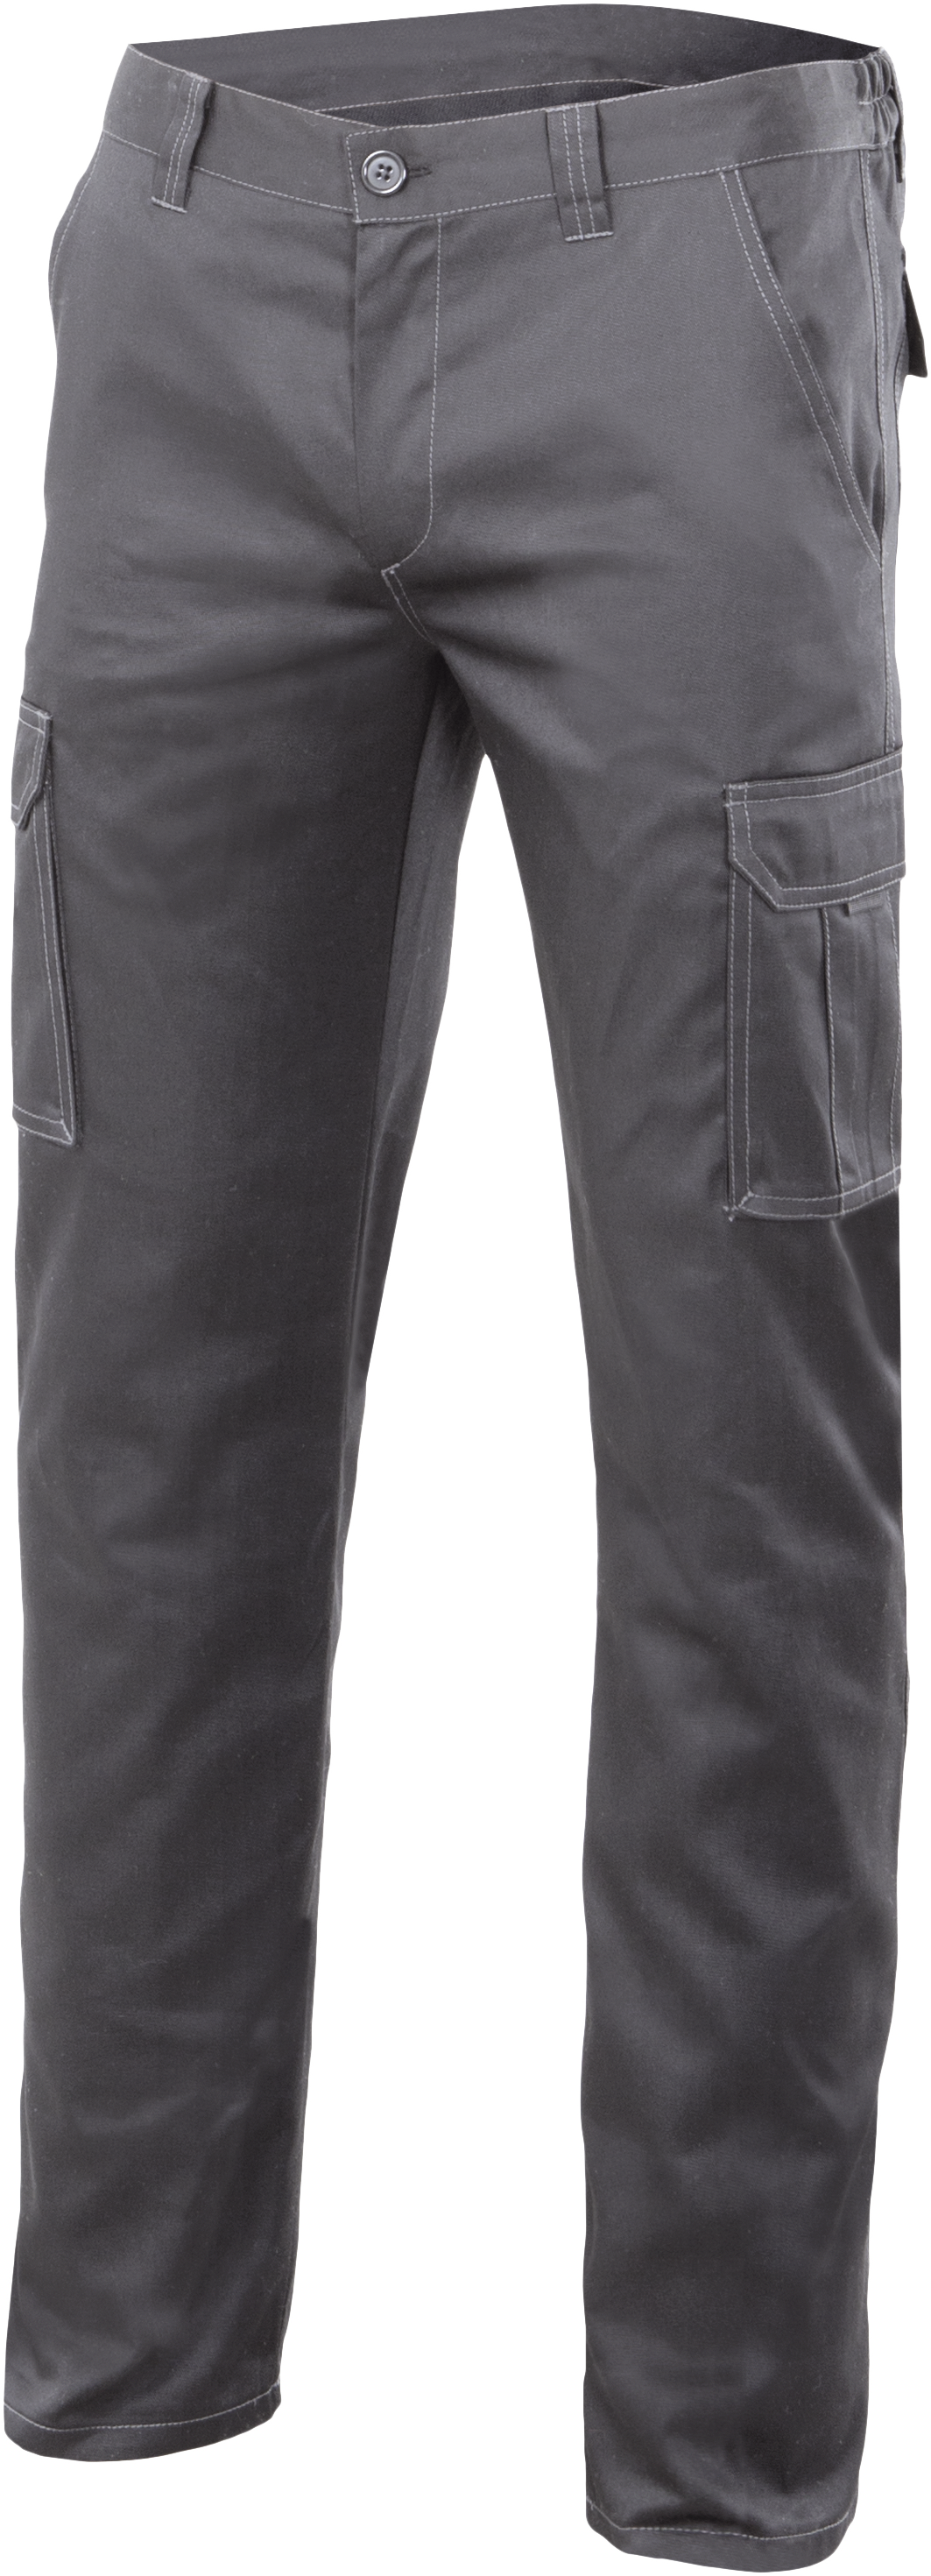 Pantalon gris 103002S TXS/S | Merlin